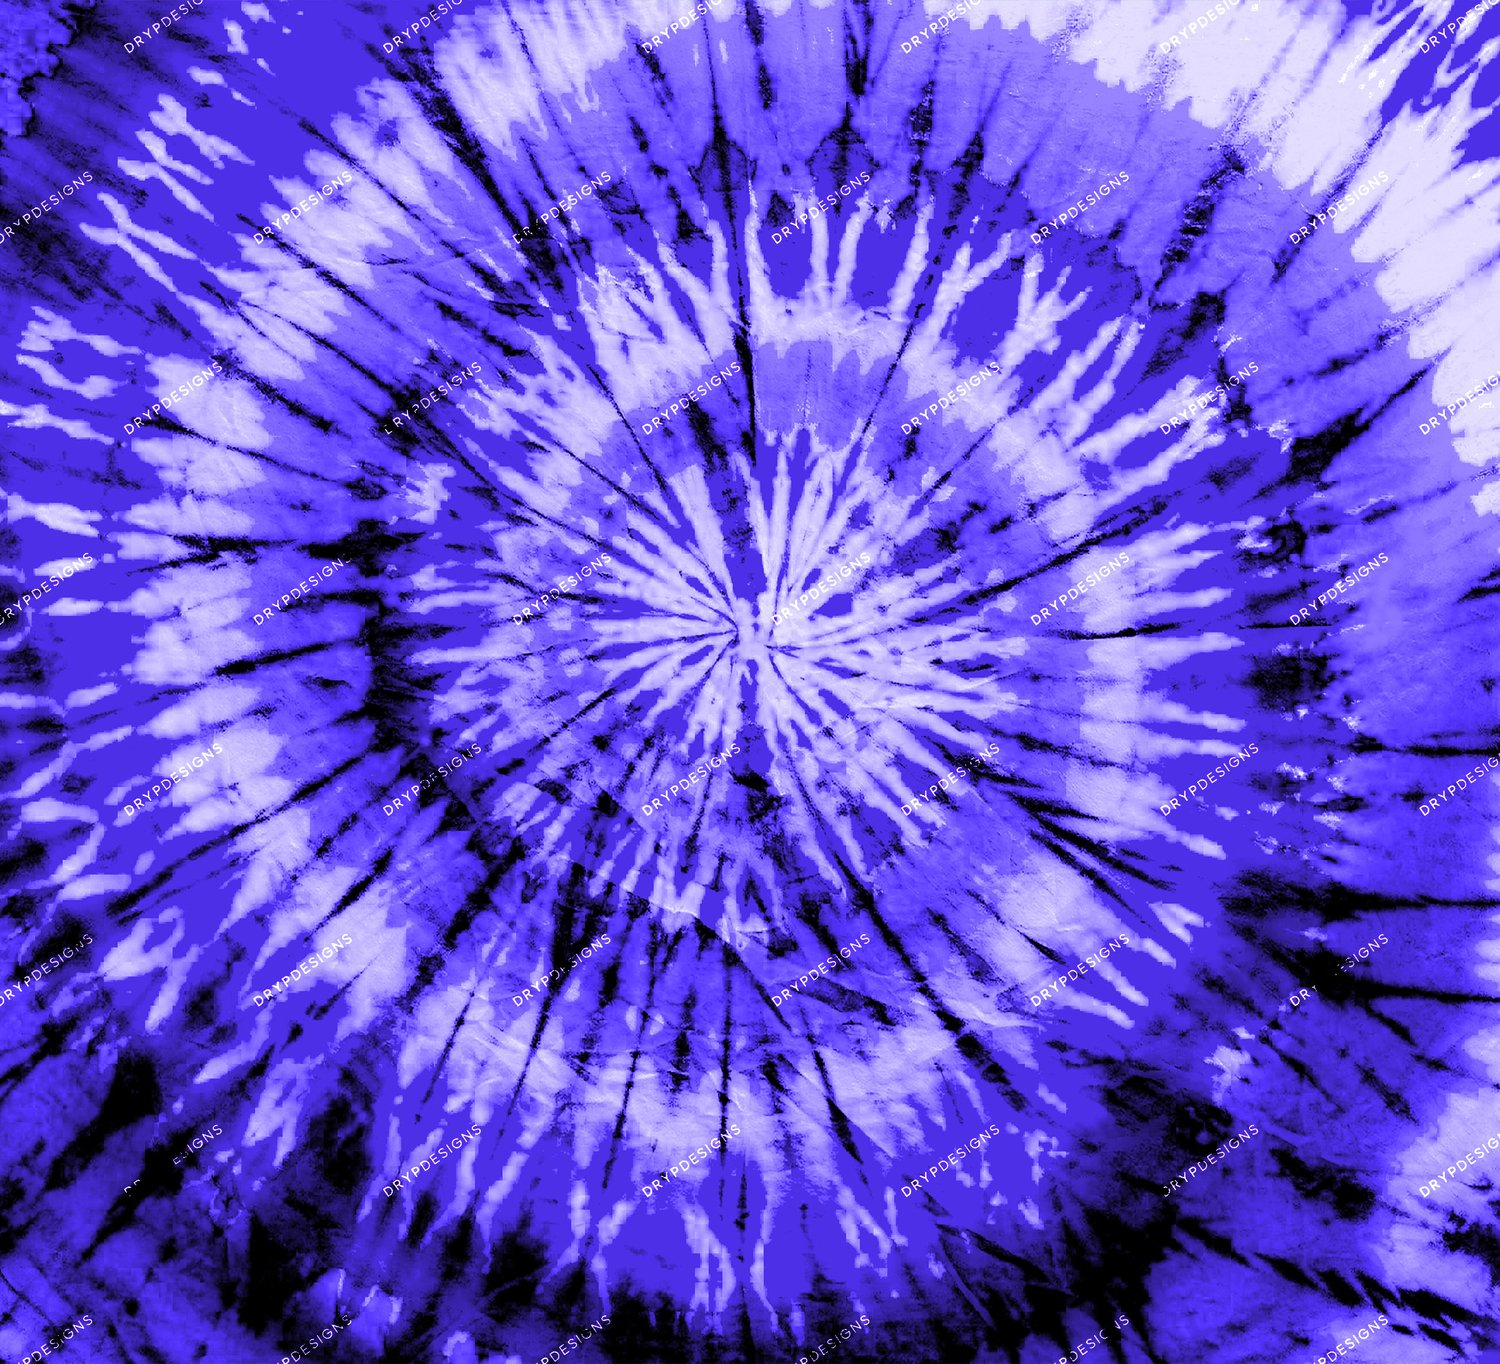 Purple Tie-Dye Digital Paper Background của drypdesigns sẽ mang đến cho bạn một nền phông số pha màu tím vô cùng đẹp mắt và trang nhã. Bạn sẽ không thể rời mắt khỏi việc quan sát các đường phân tán màu từ sáng đến tối trên bức hình của mình.